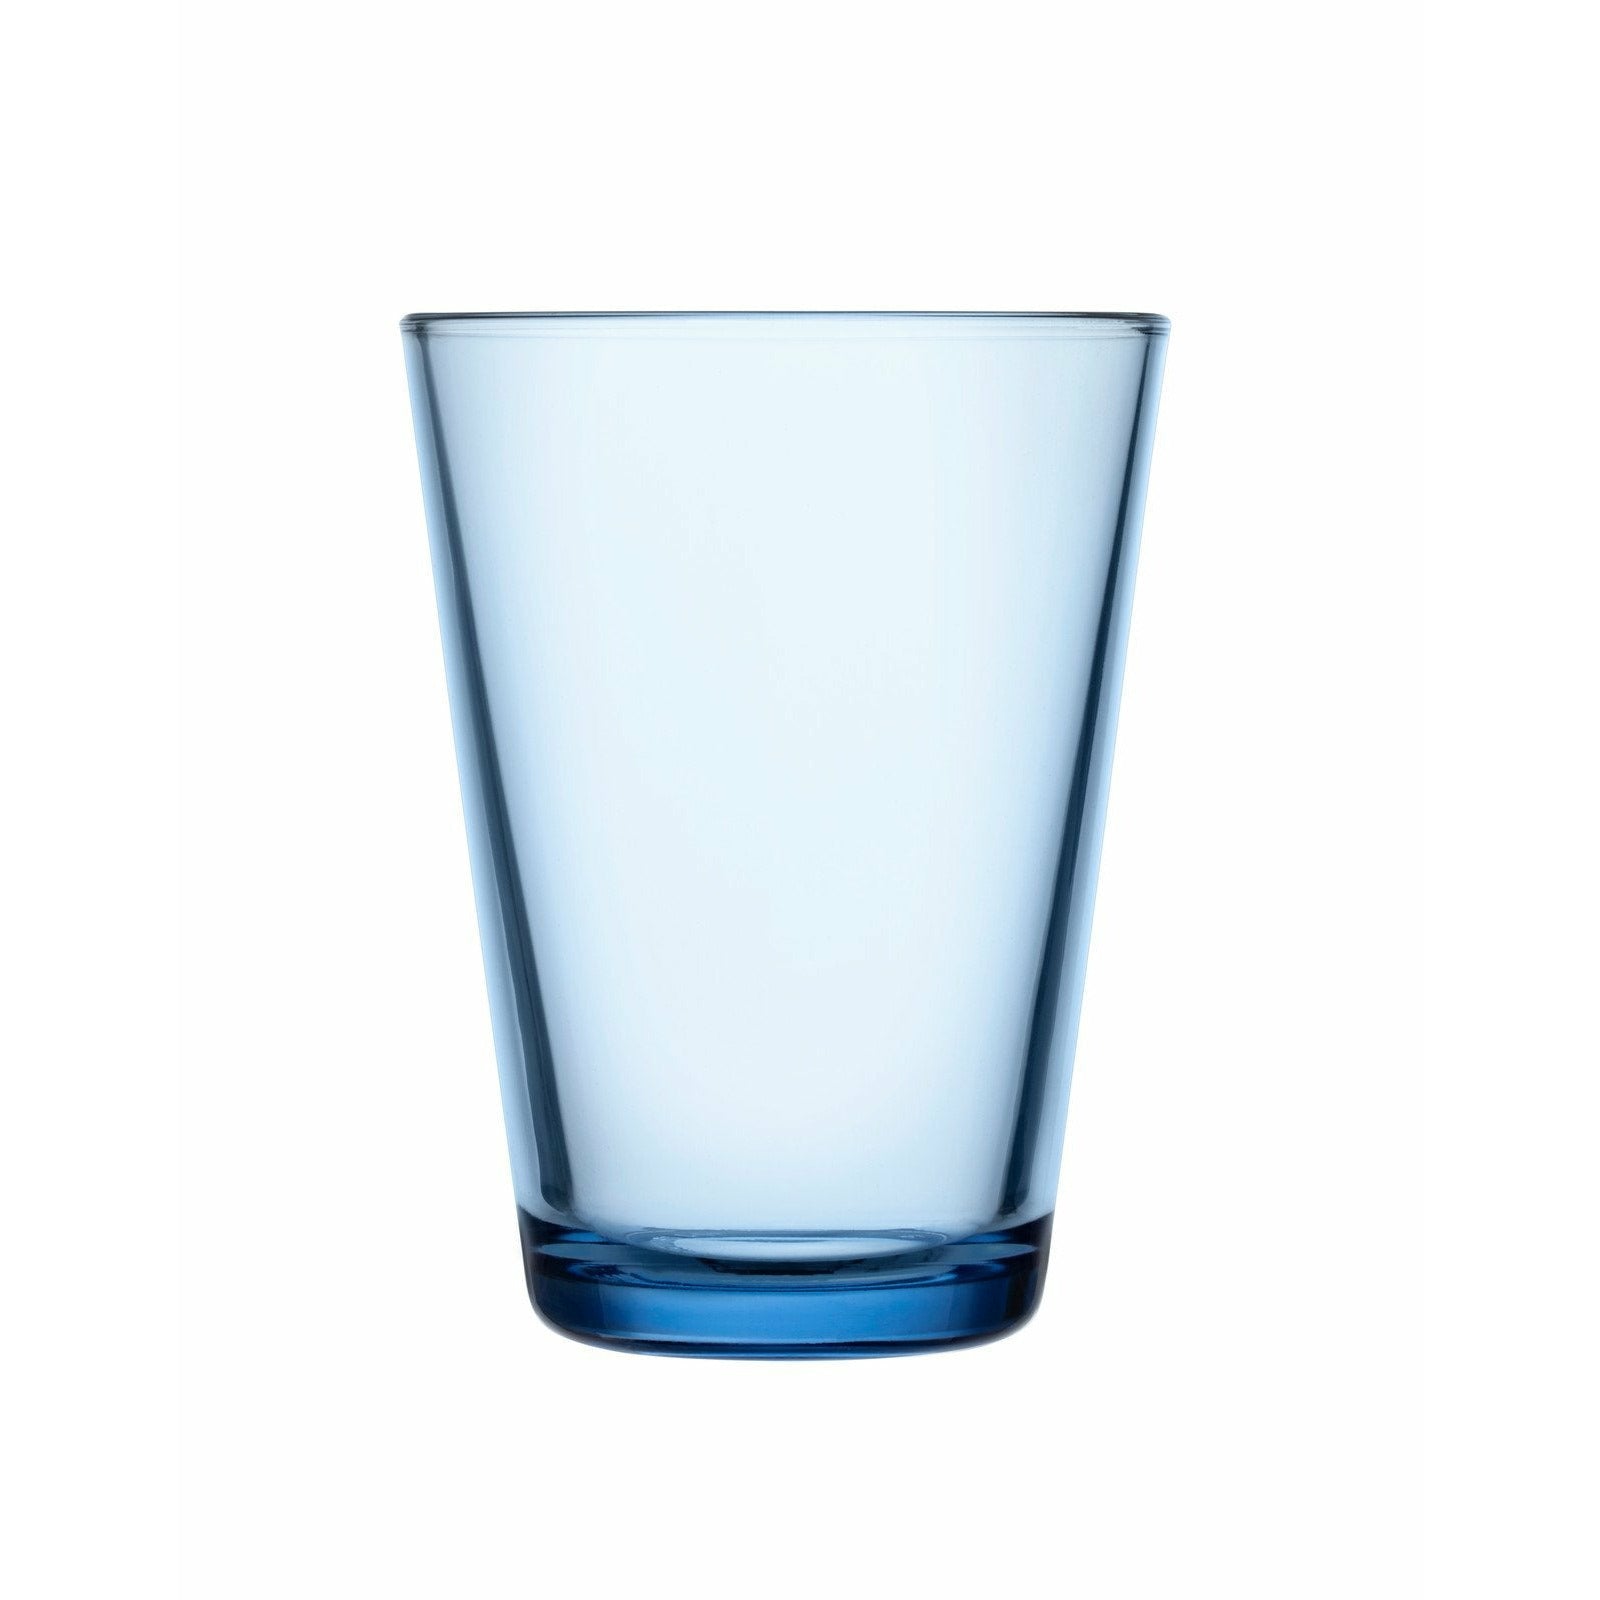 Iittala Katio Picie Glass Aqua 40cl, 2pcs.